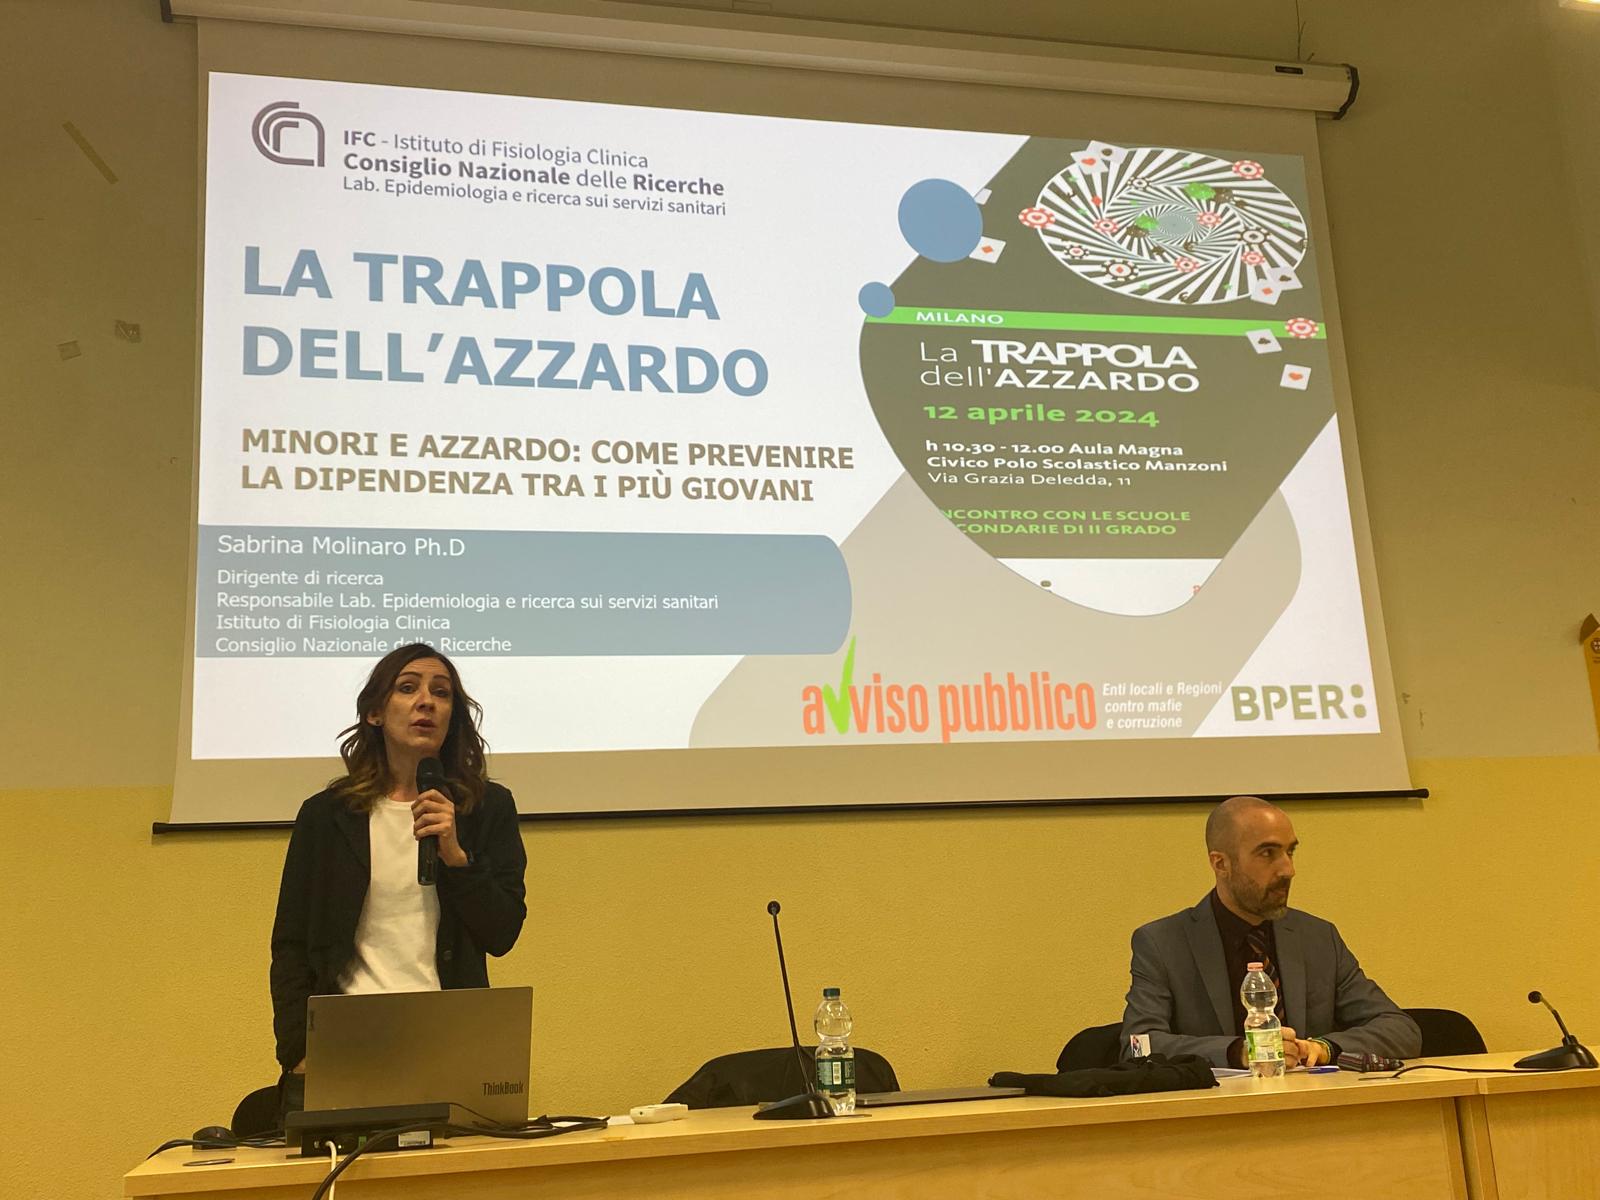 Sabrina Molinaro ricercatrice del CNR presenta i dati del rapporto ESPAD 2023 all'incontro la trappola dell'azzardo organizzato da avviso pubblico per dare la notizia dell'allarme sui giovani minorenni che in Italia giocano d'azzardo